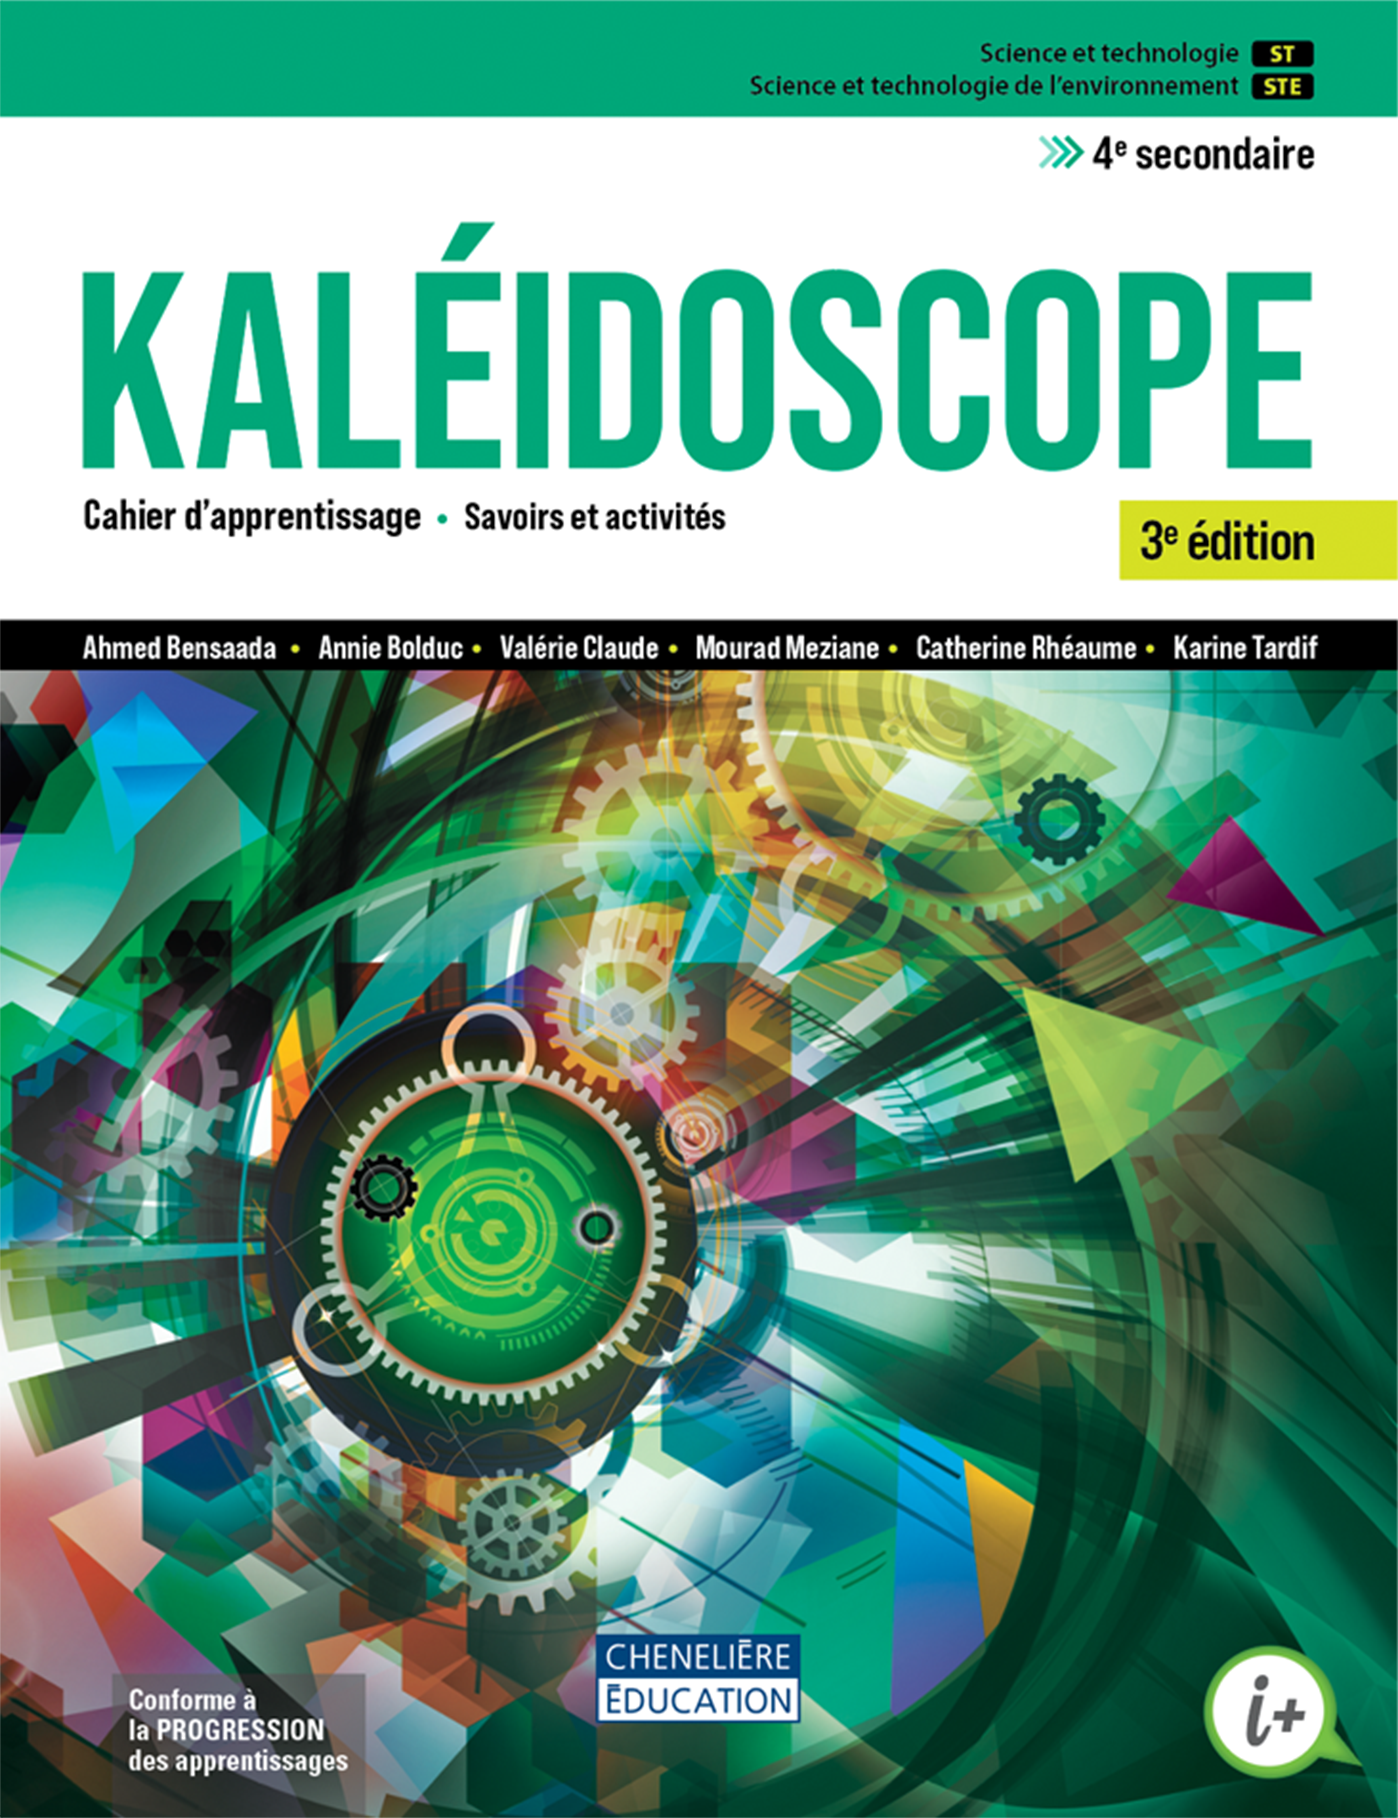 Couverture de Kaléidoscope ST-STE, 4e secondaire